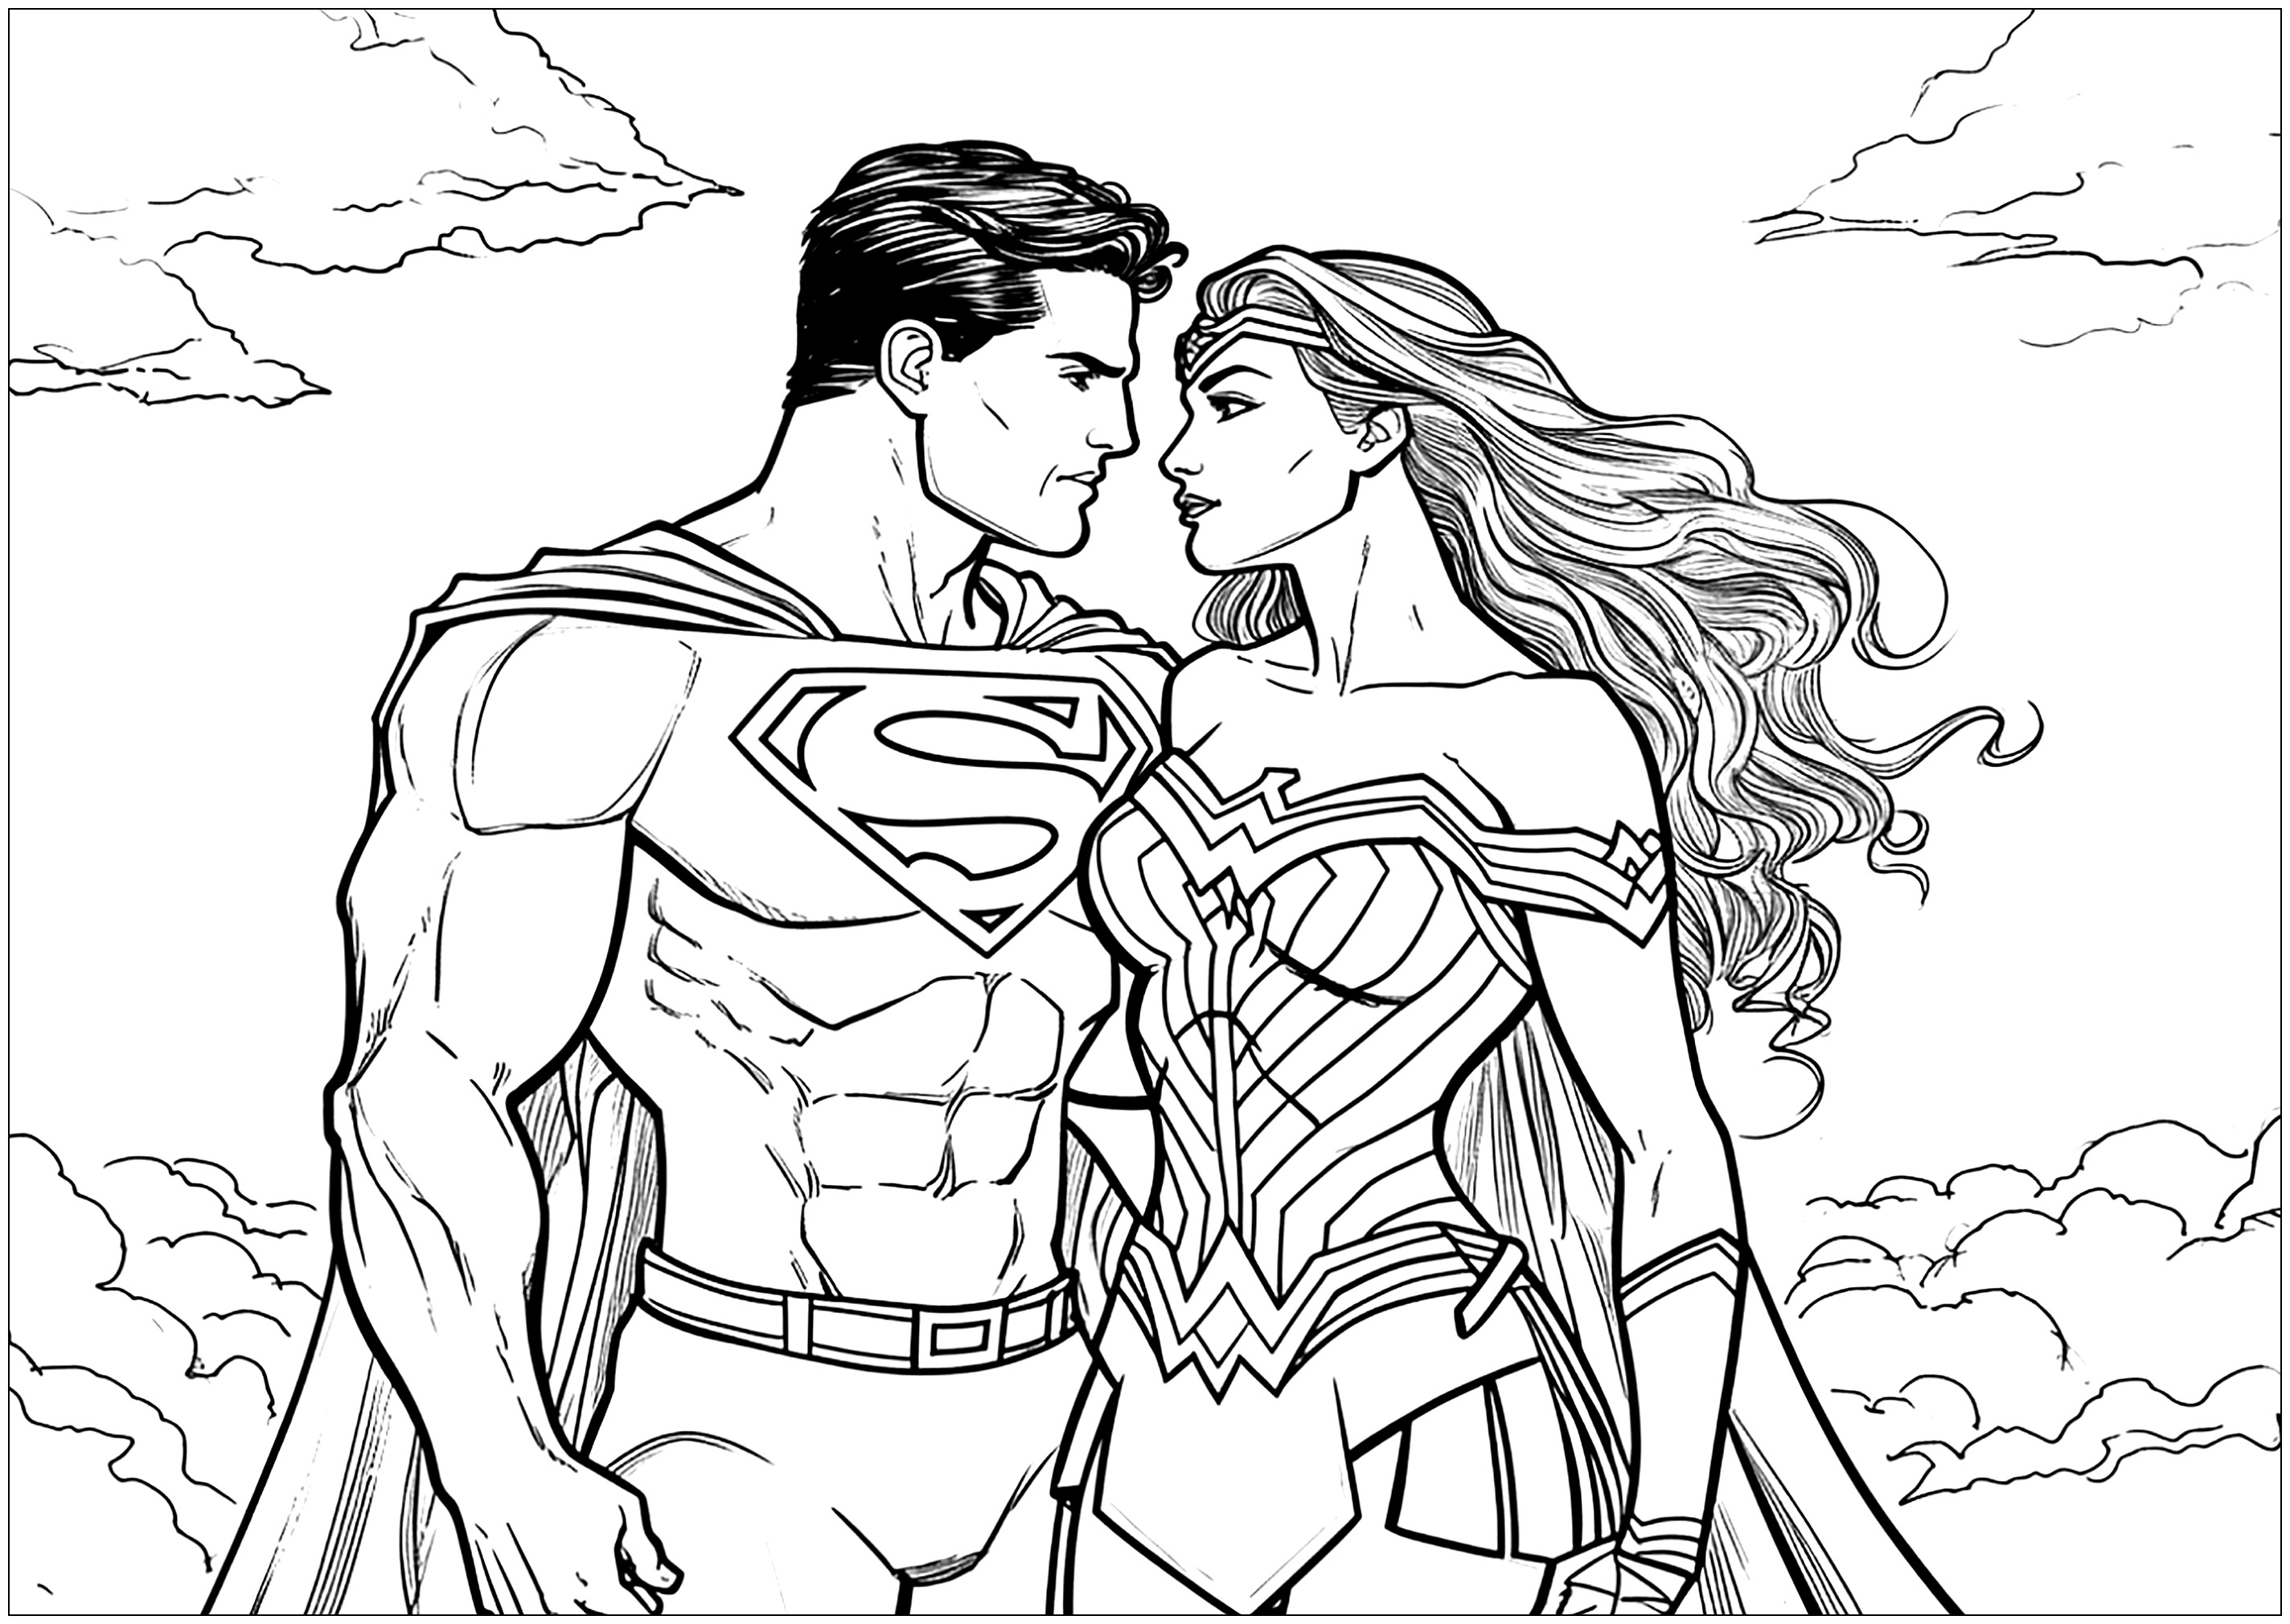 Superman e Wonder Woman innamorati. Anche i supereroi possono innamorarsi... Un'originale pagina da colorare per San Valentino!